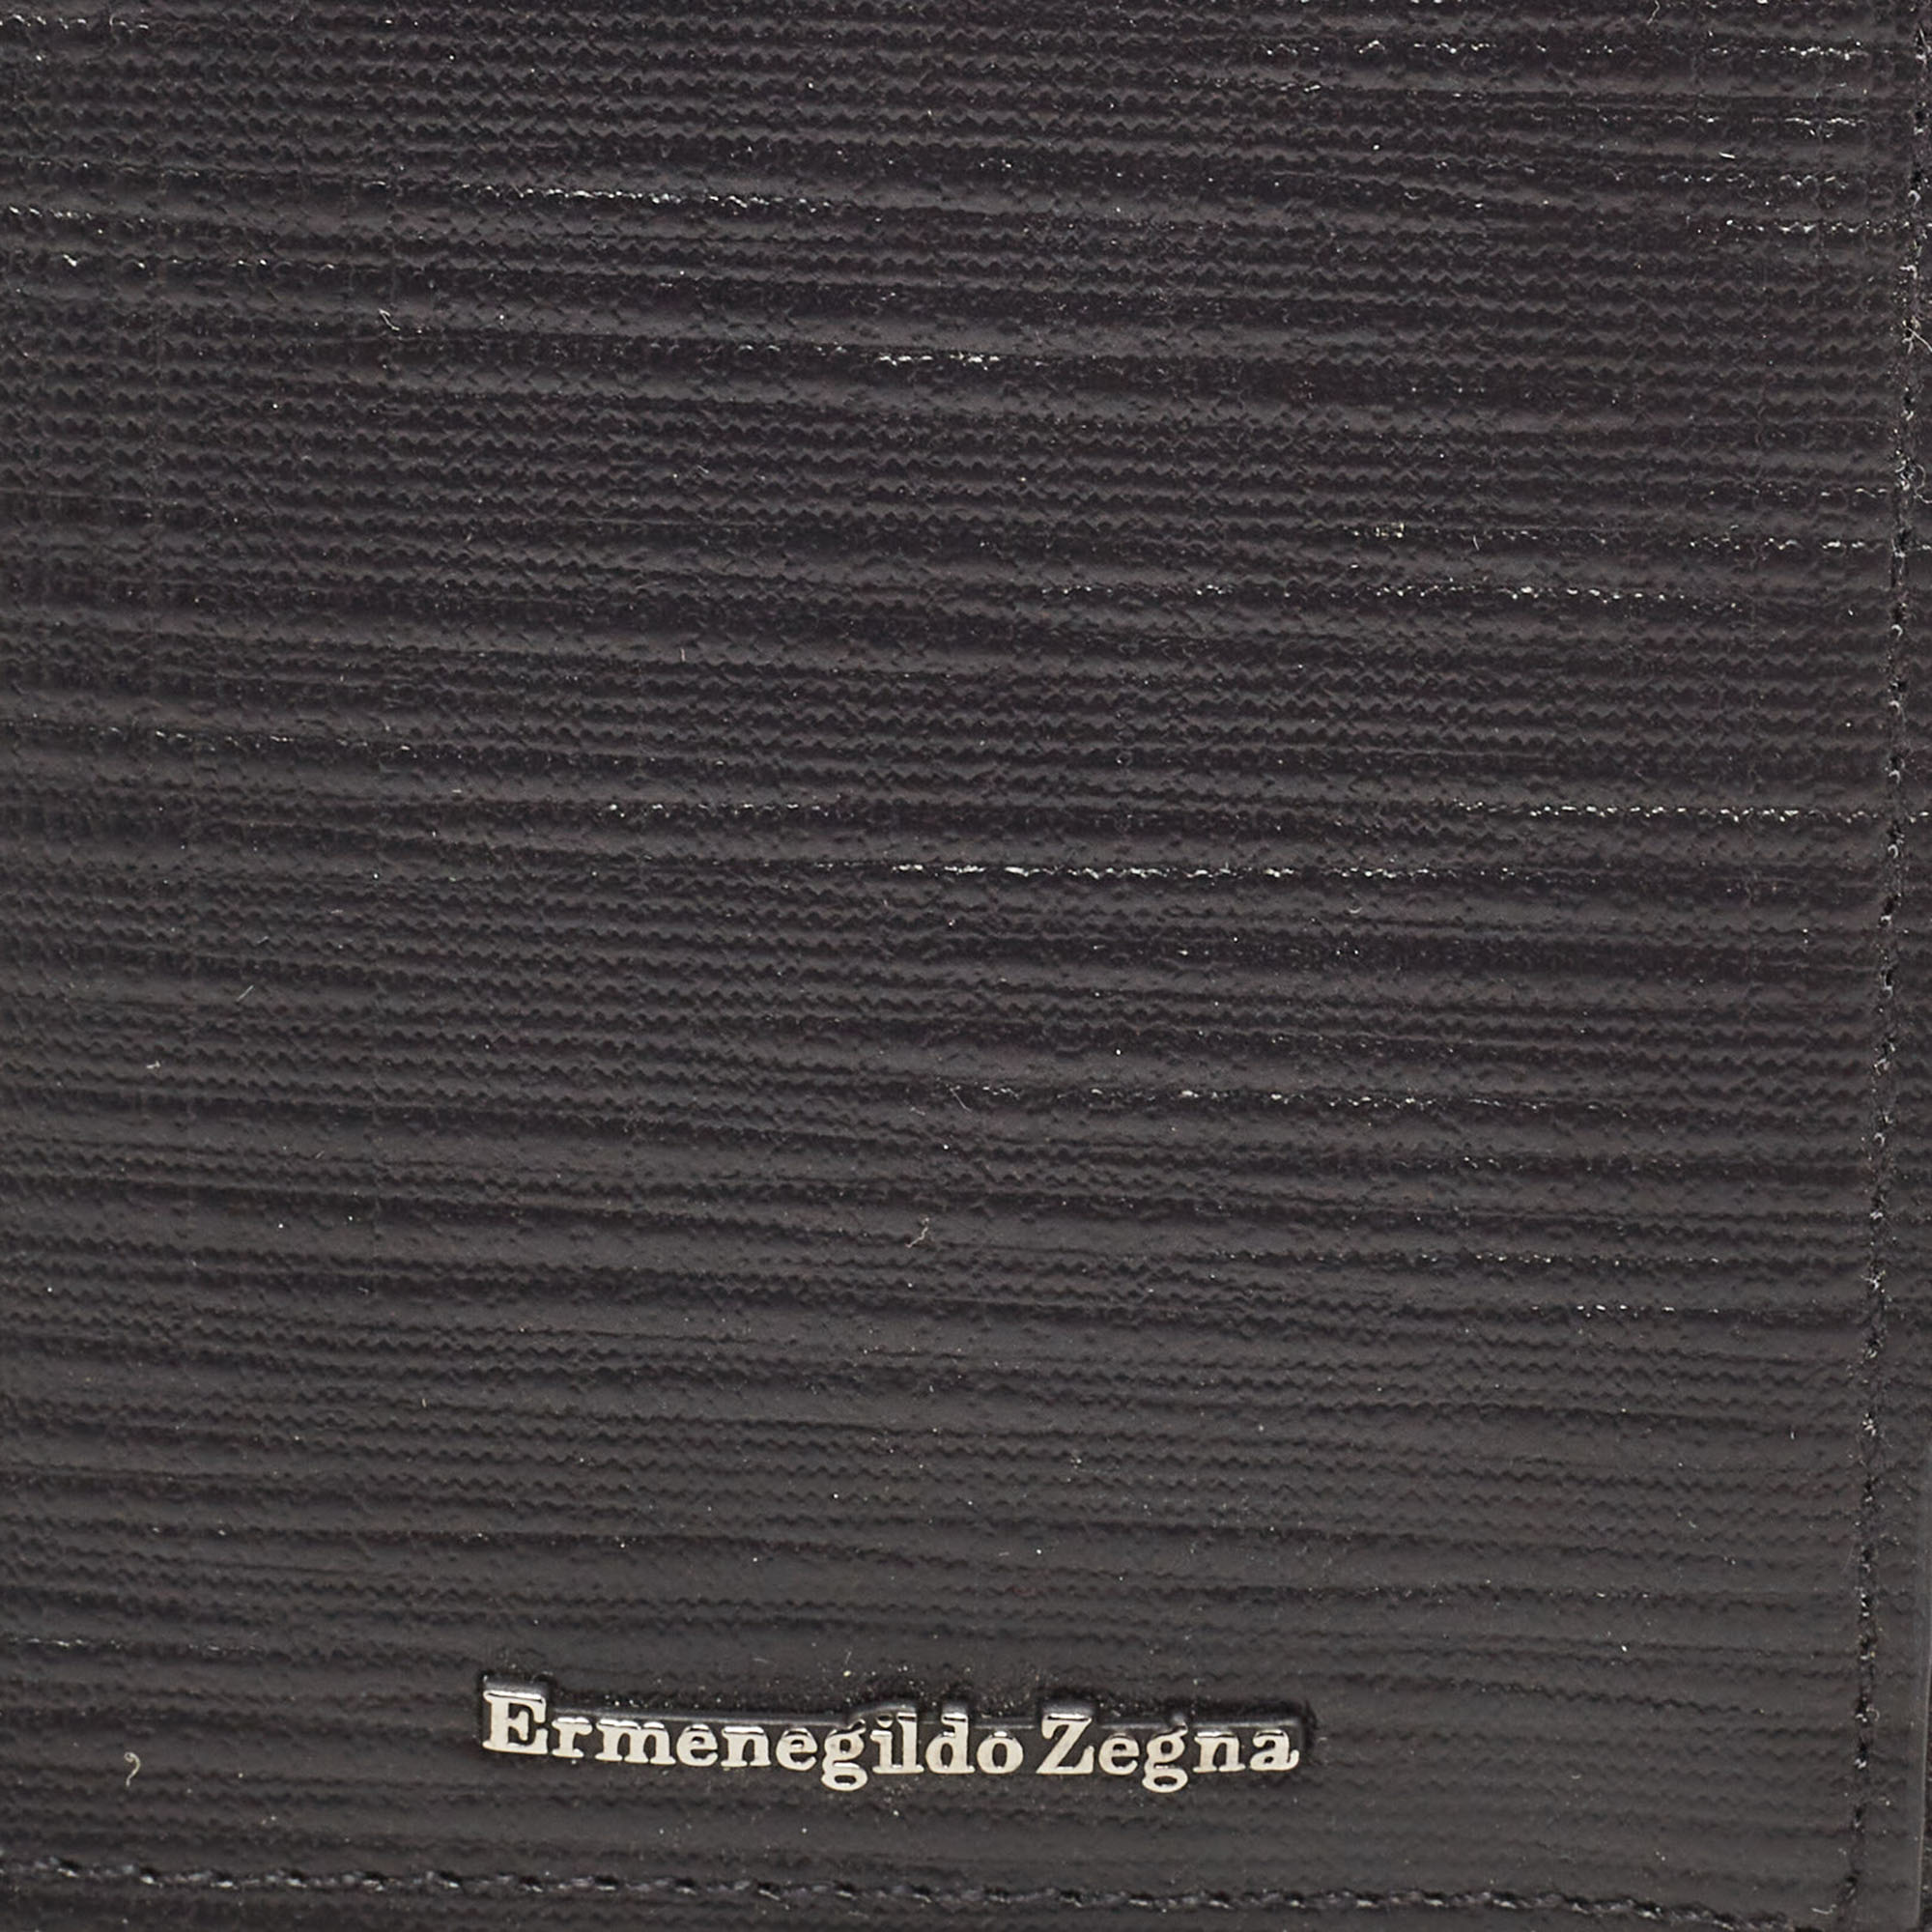 Ermenegildo Zegna Black Leather Zip Card Case